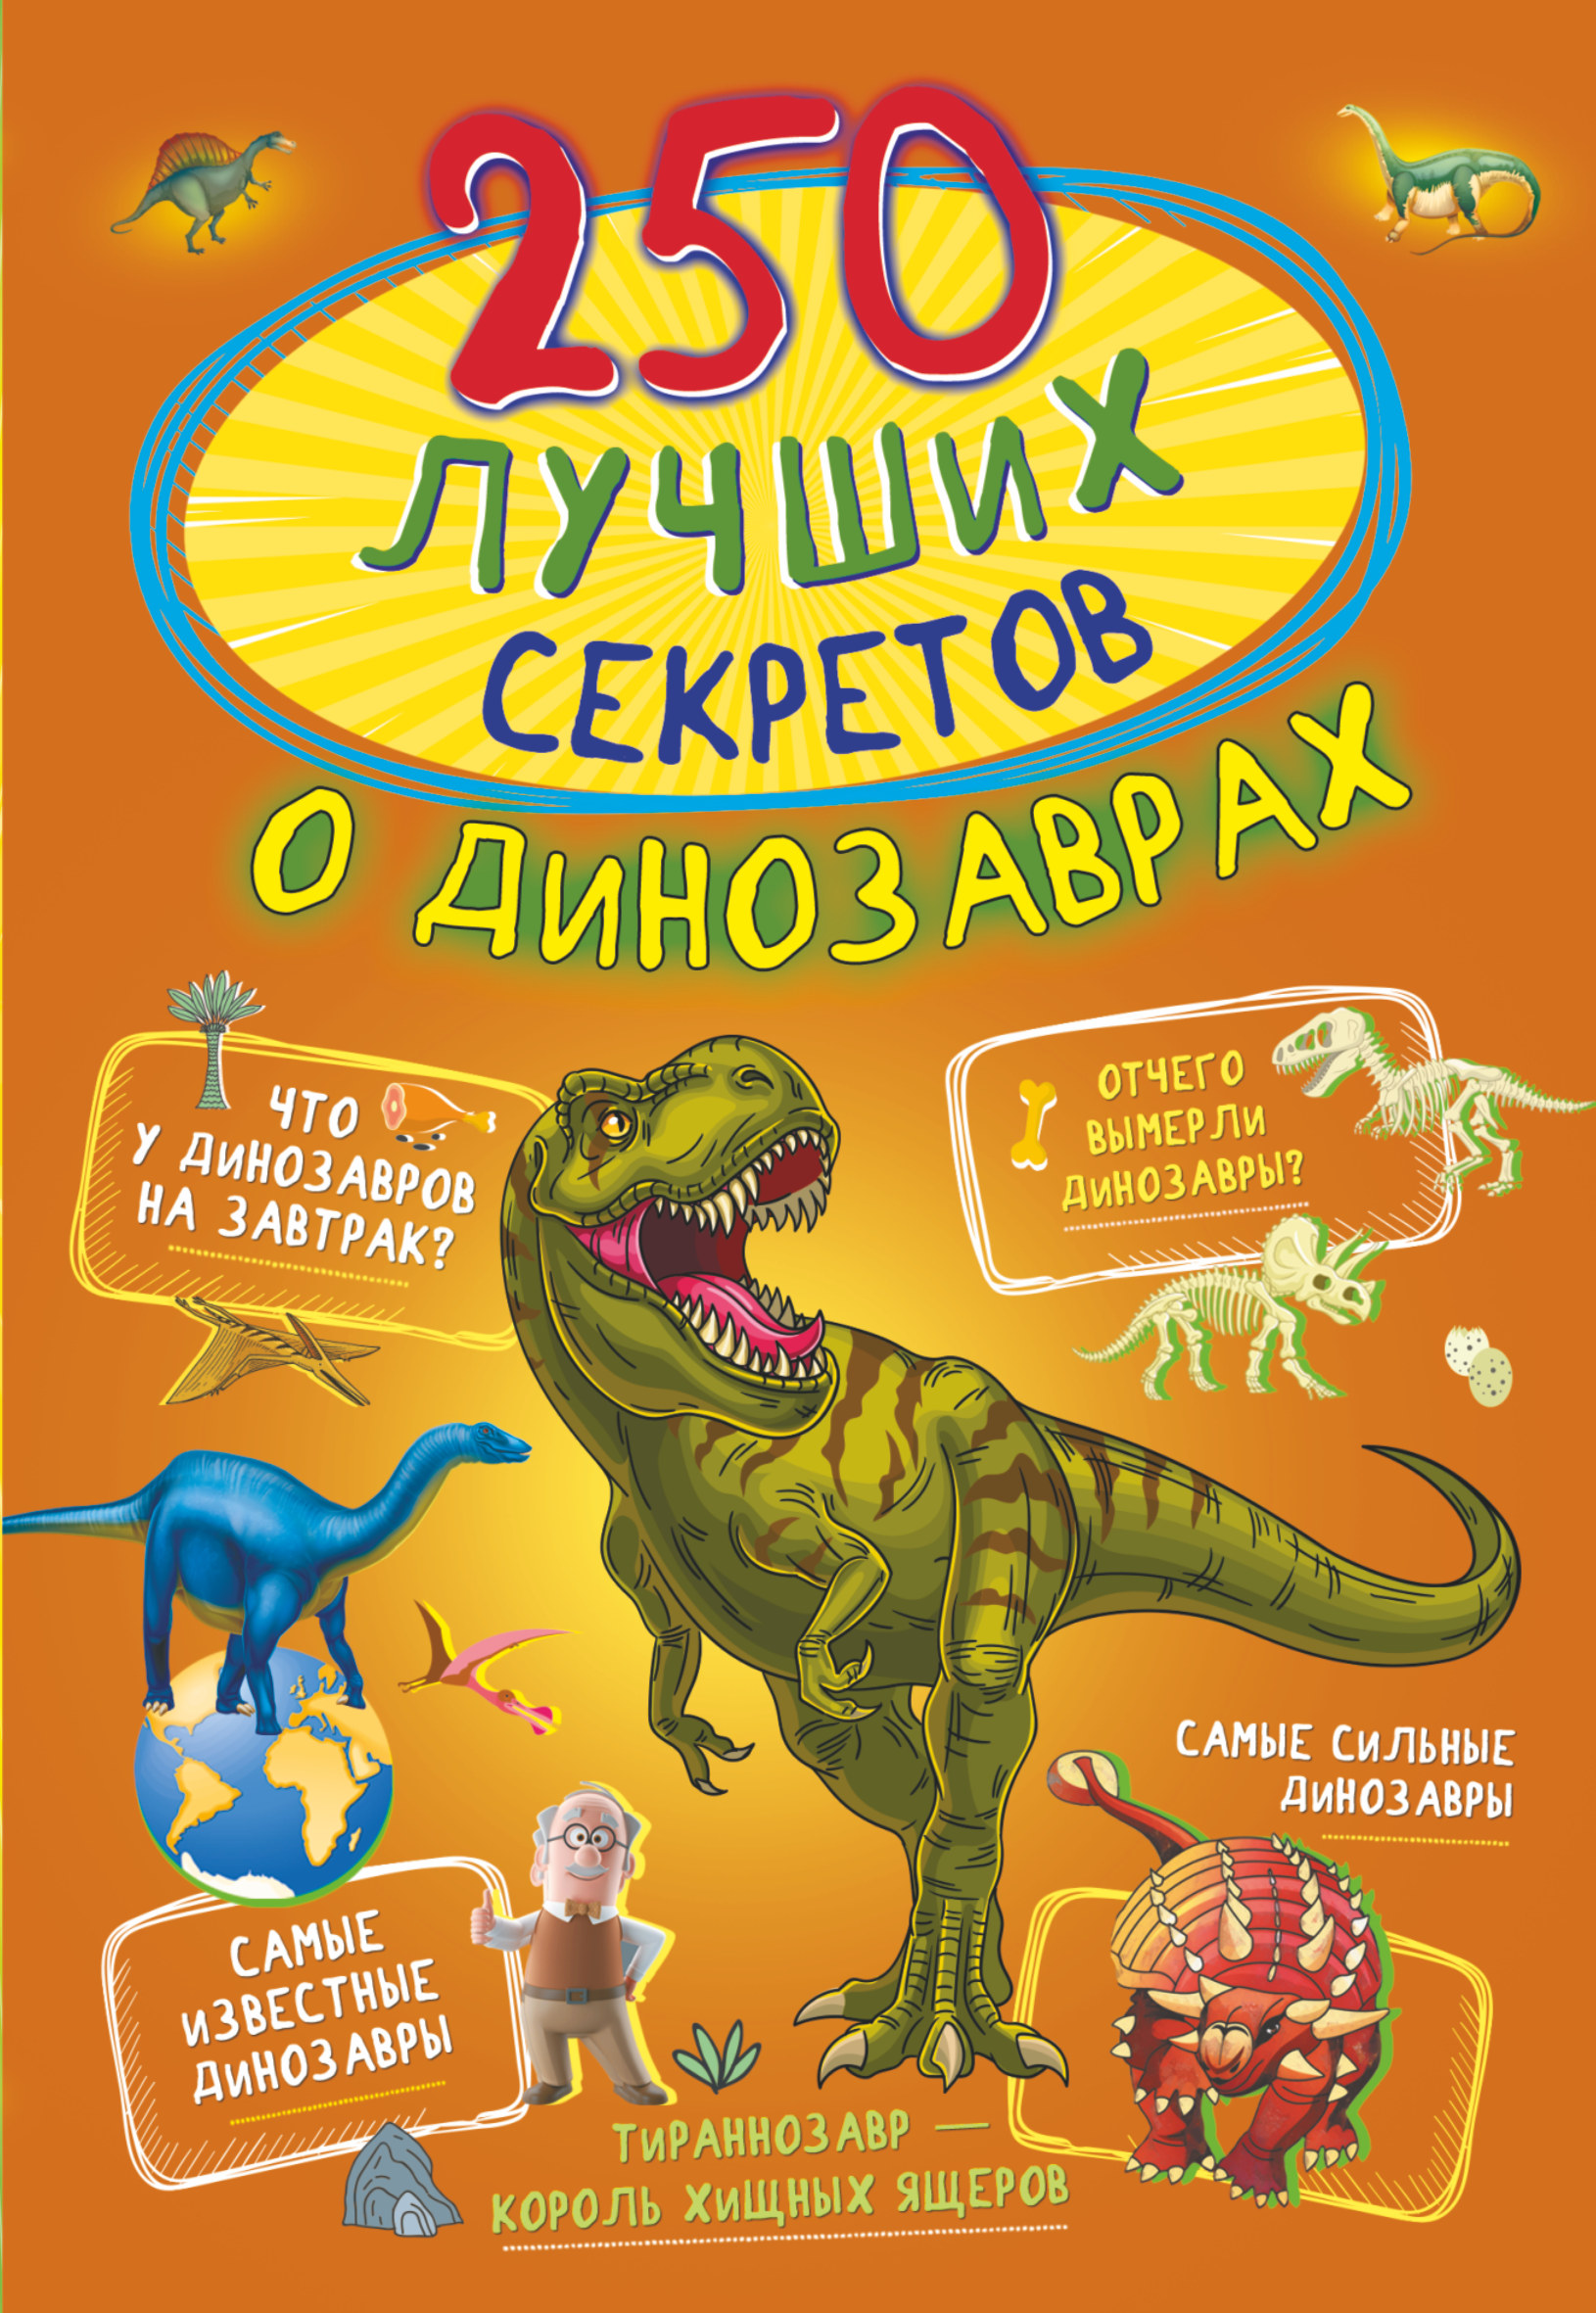 Прудник Анастасия Александровна - 250 лучших секретов о динозаврах